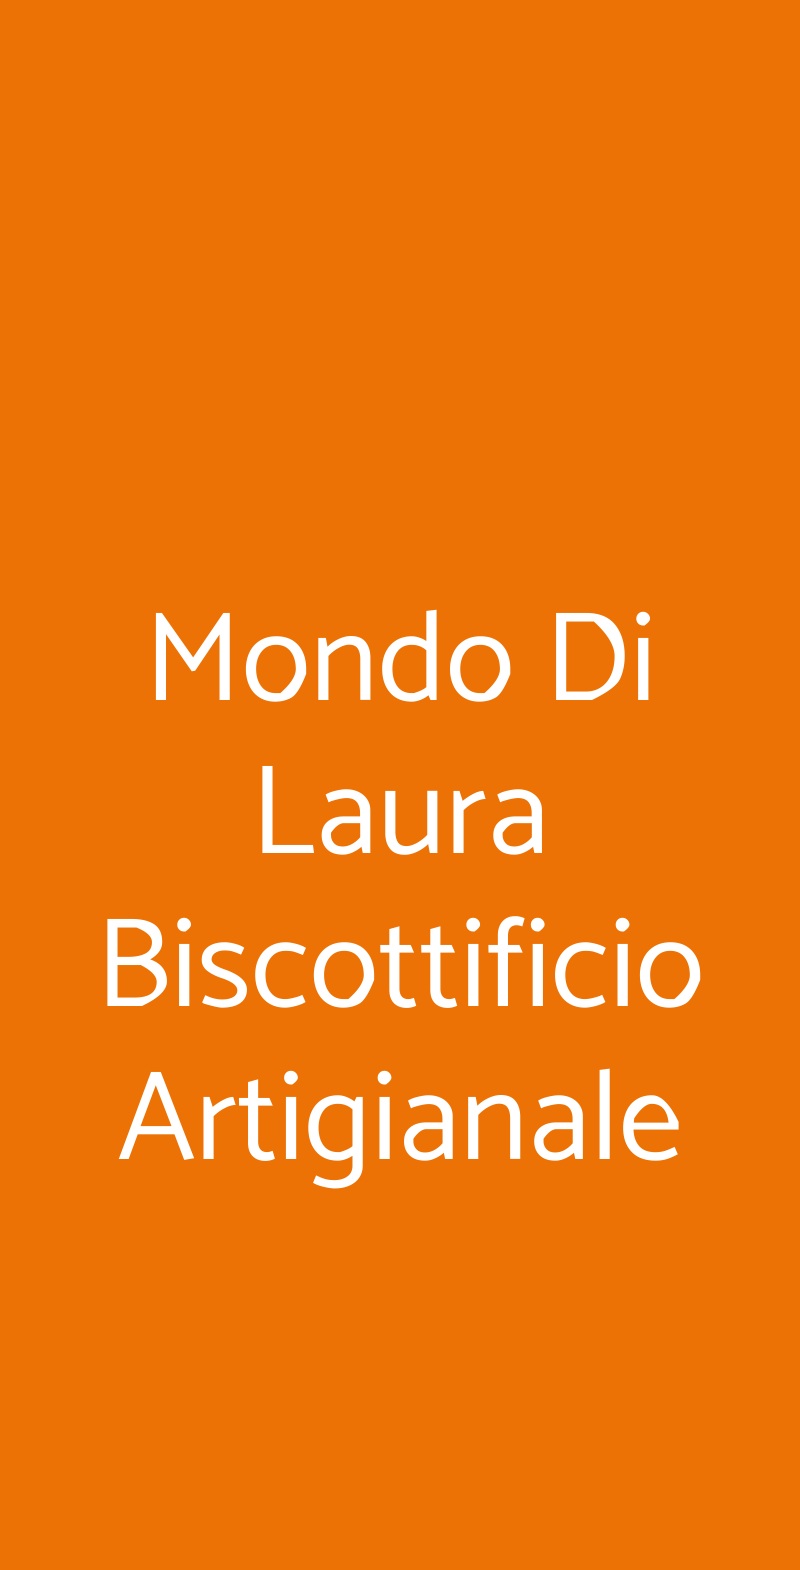 Mondo Di Laura Biscottificio Artigianale Roma menù 1 pagina